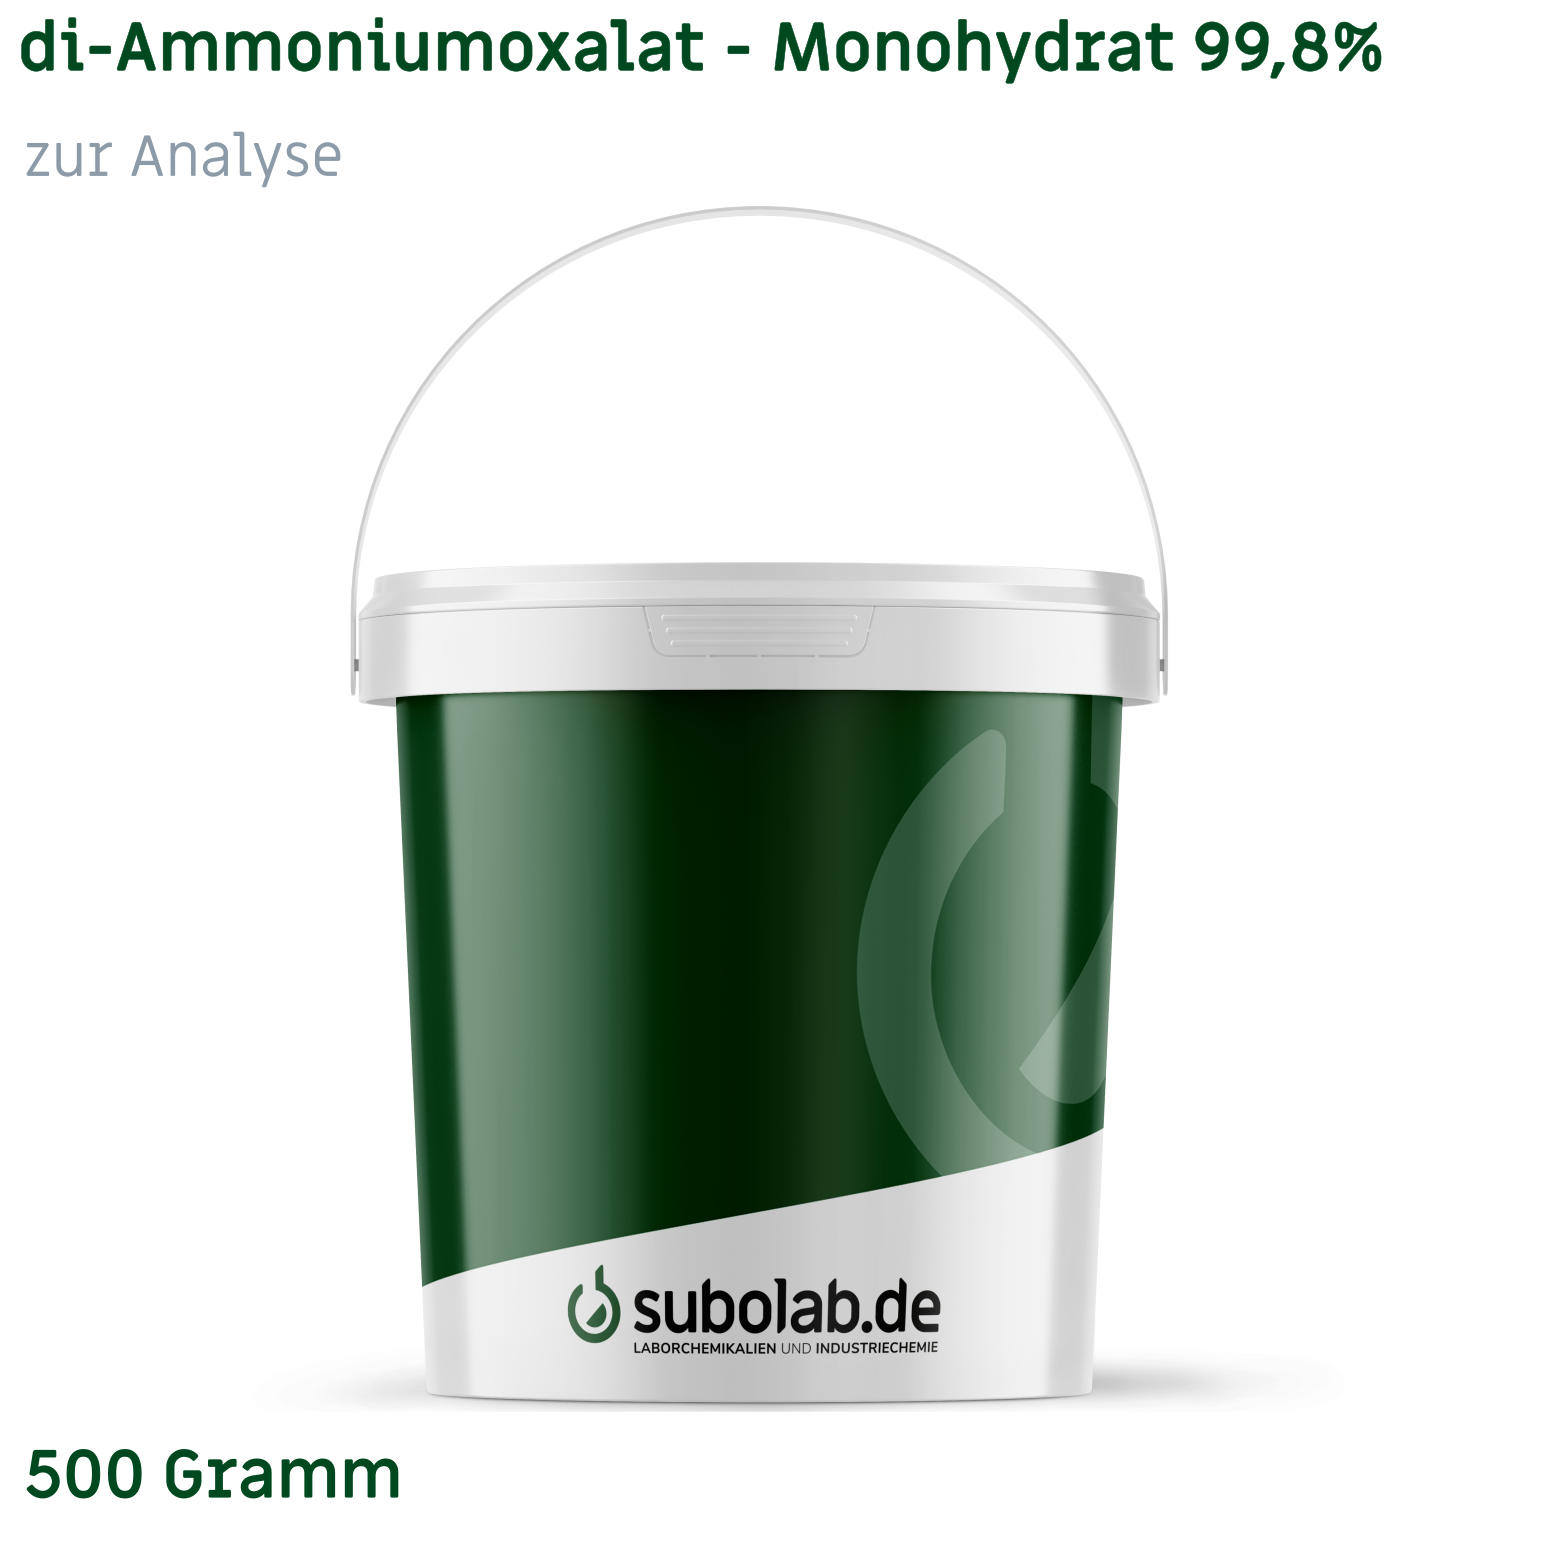 Bild von di-Ammoniumoxalat - Monohydrat 99,8% zur Analyse (500 Gramm)